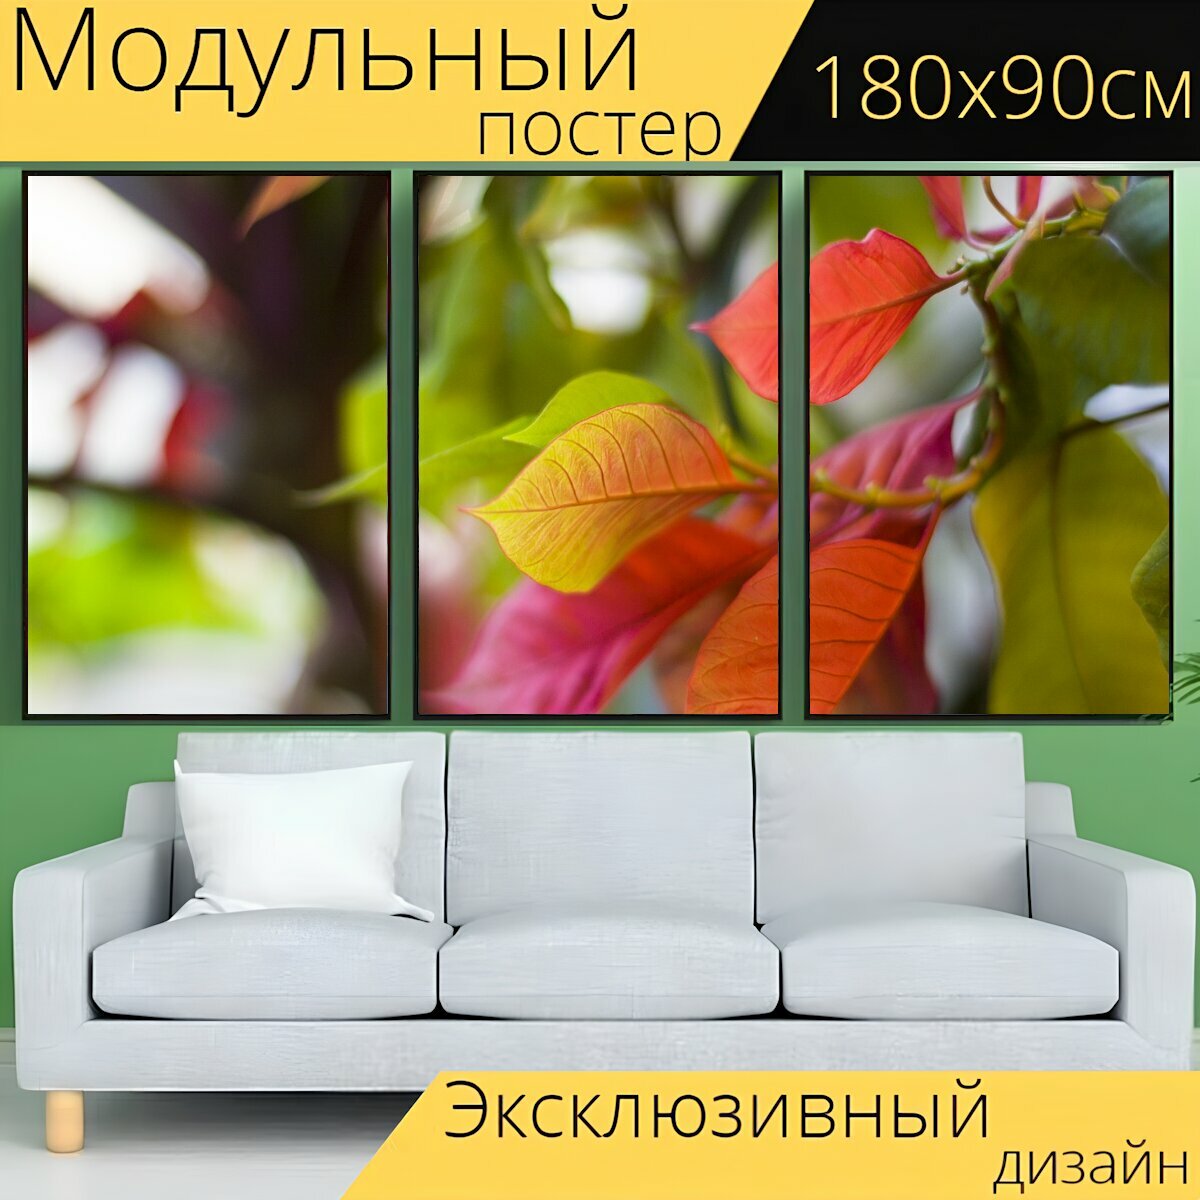 Модульный постер "Растение, листья, цветные листья" 180 x 90 см. для интерьера